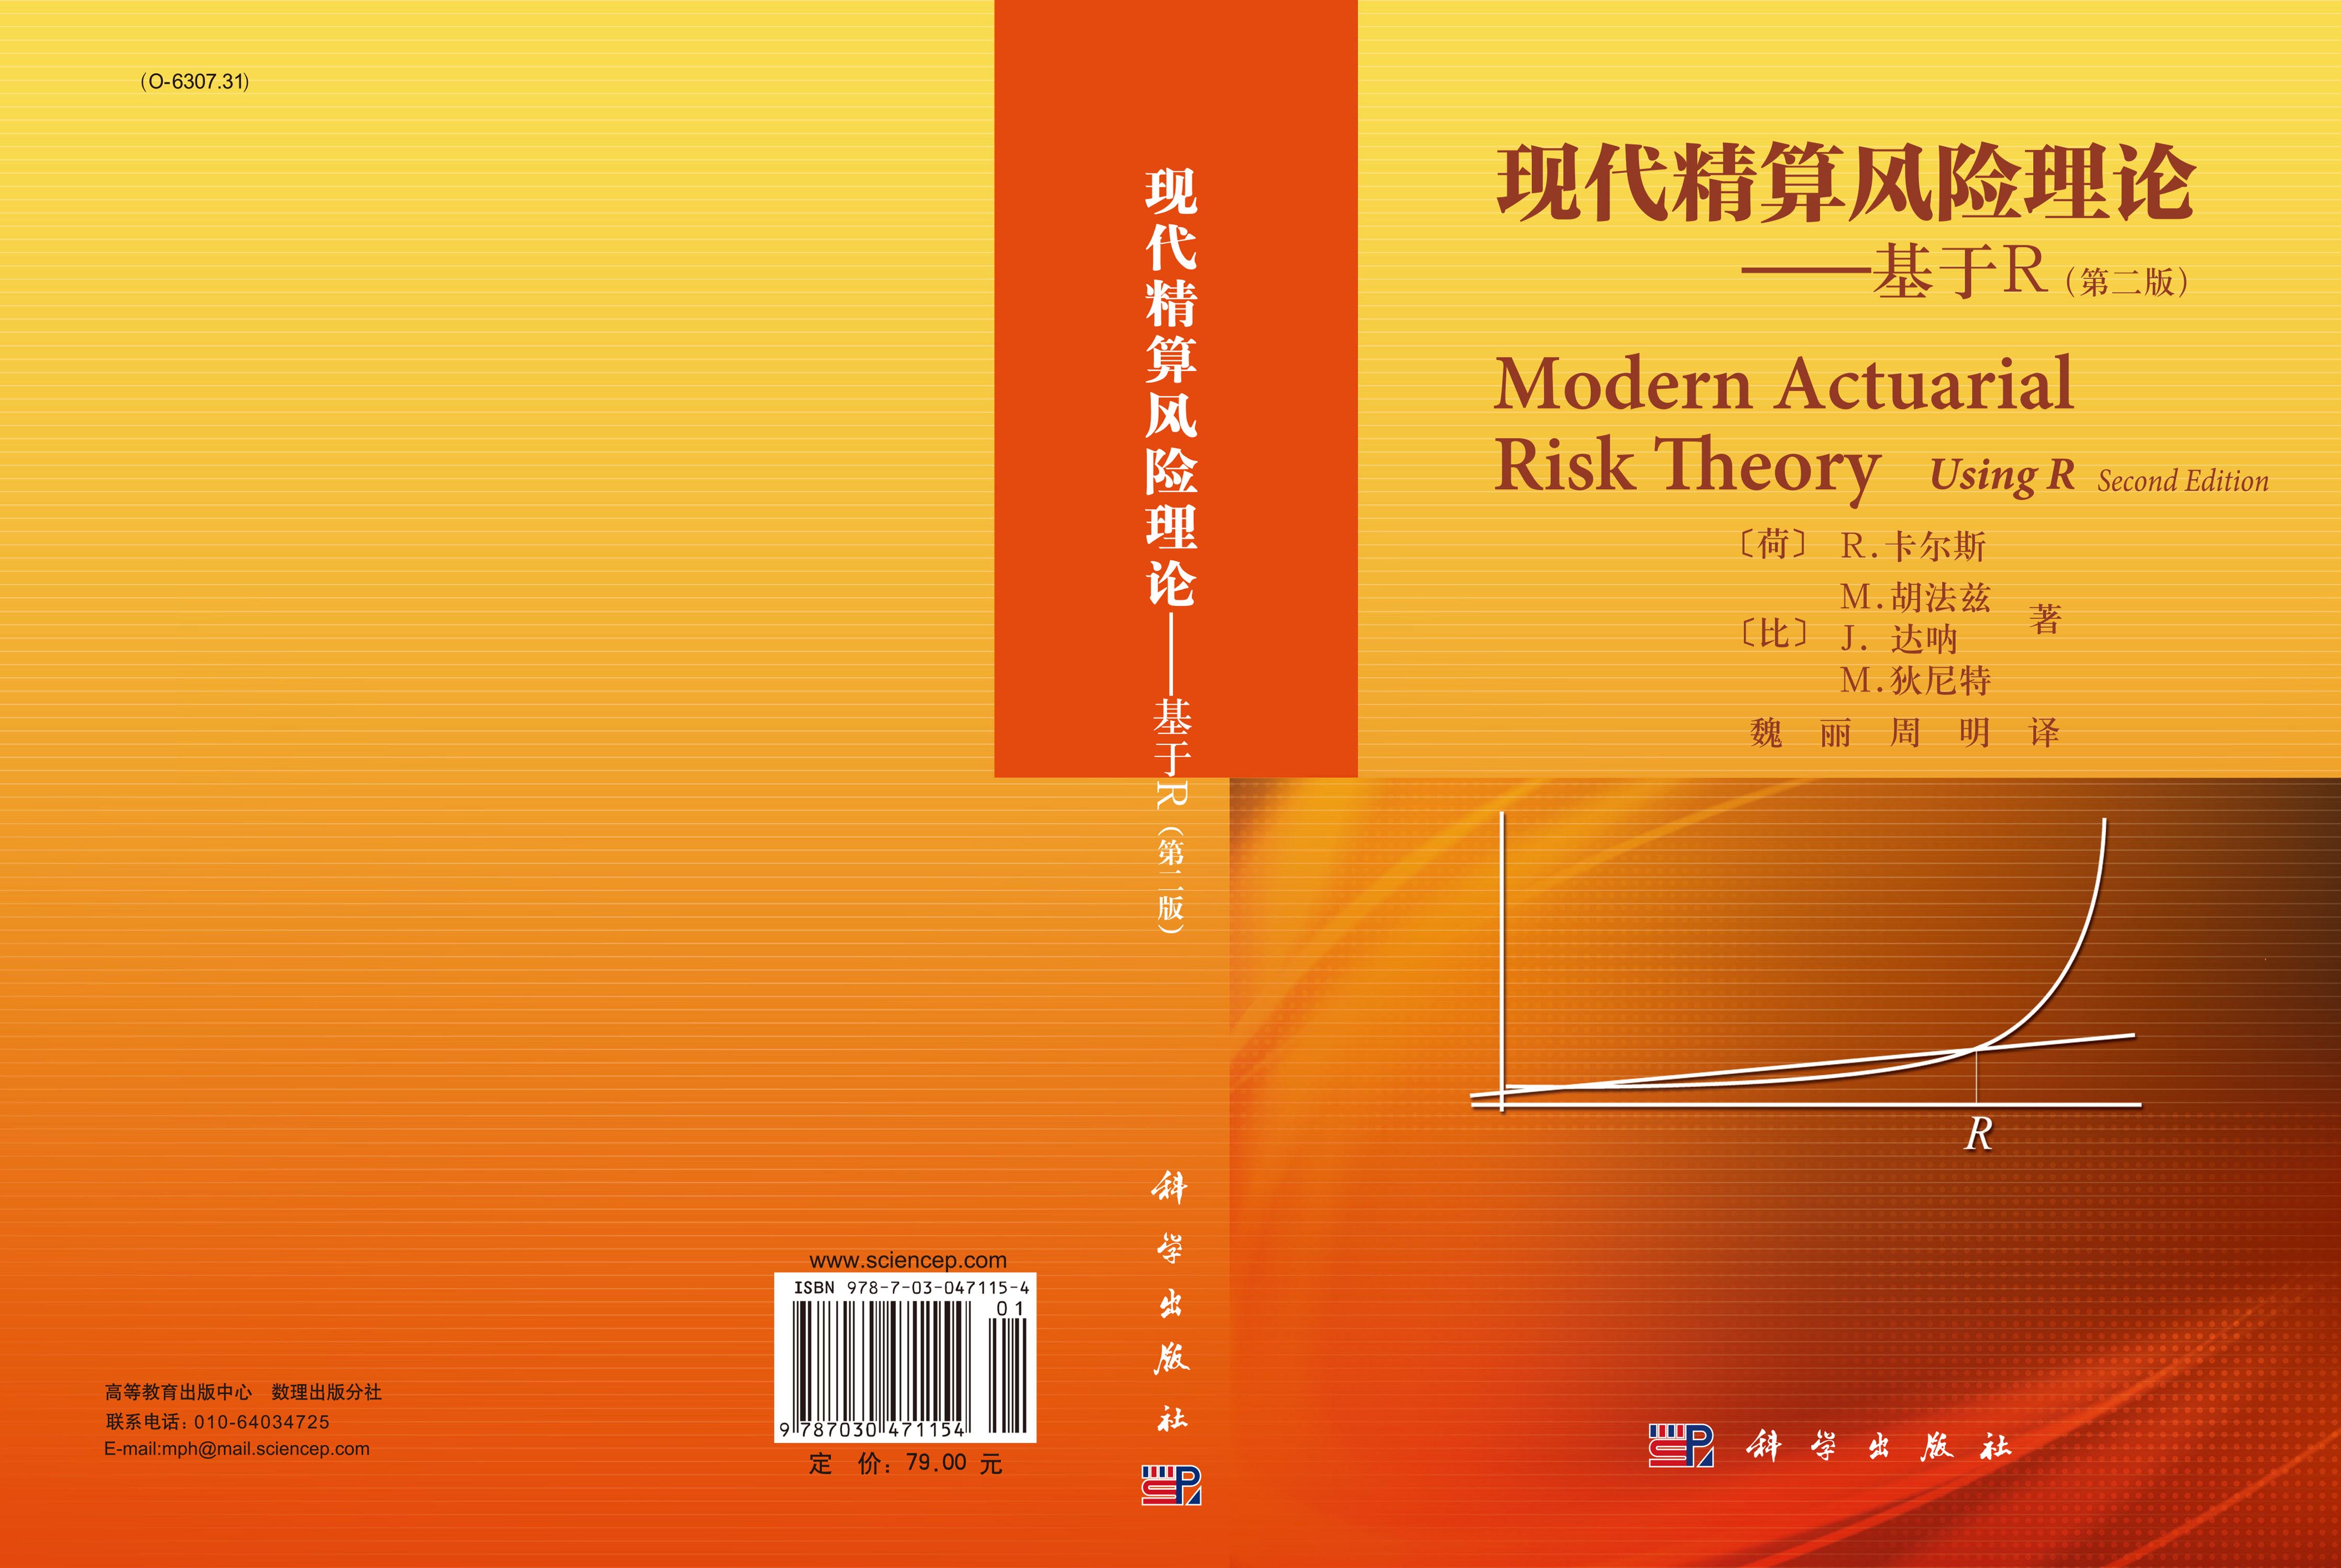 现代精算风险理论——基于R（第二版）